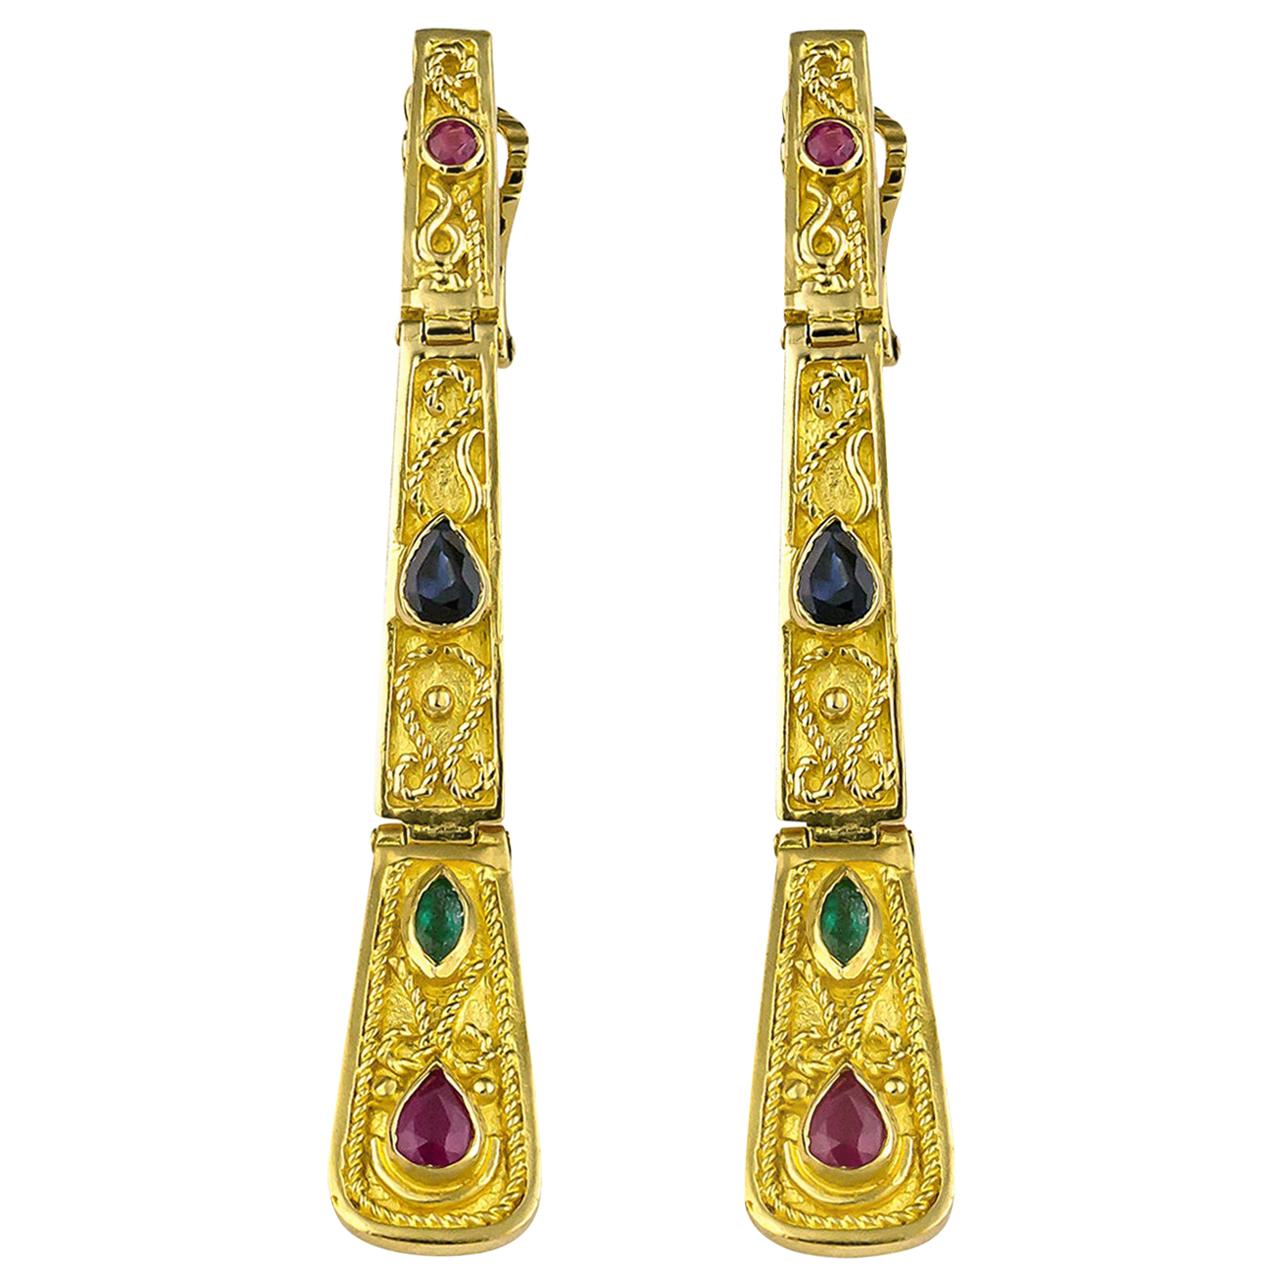 Medieval Dangle Earrings